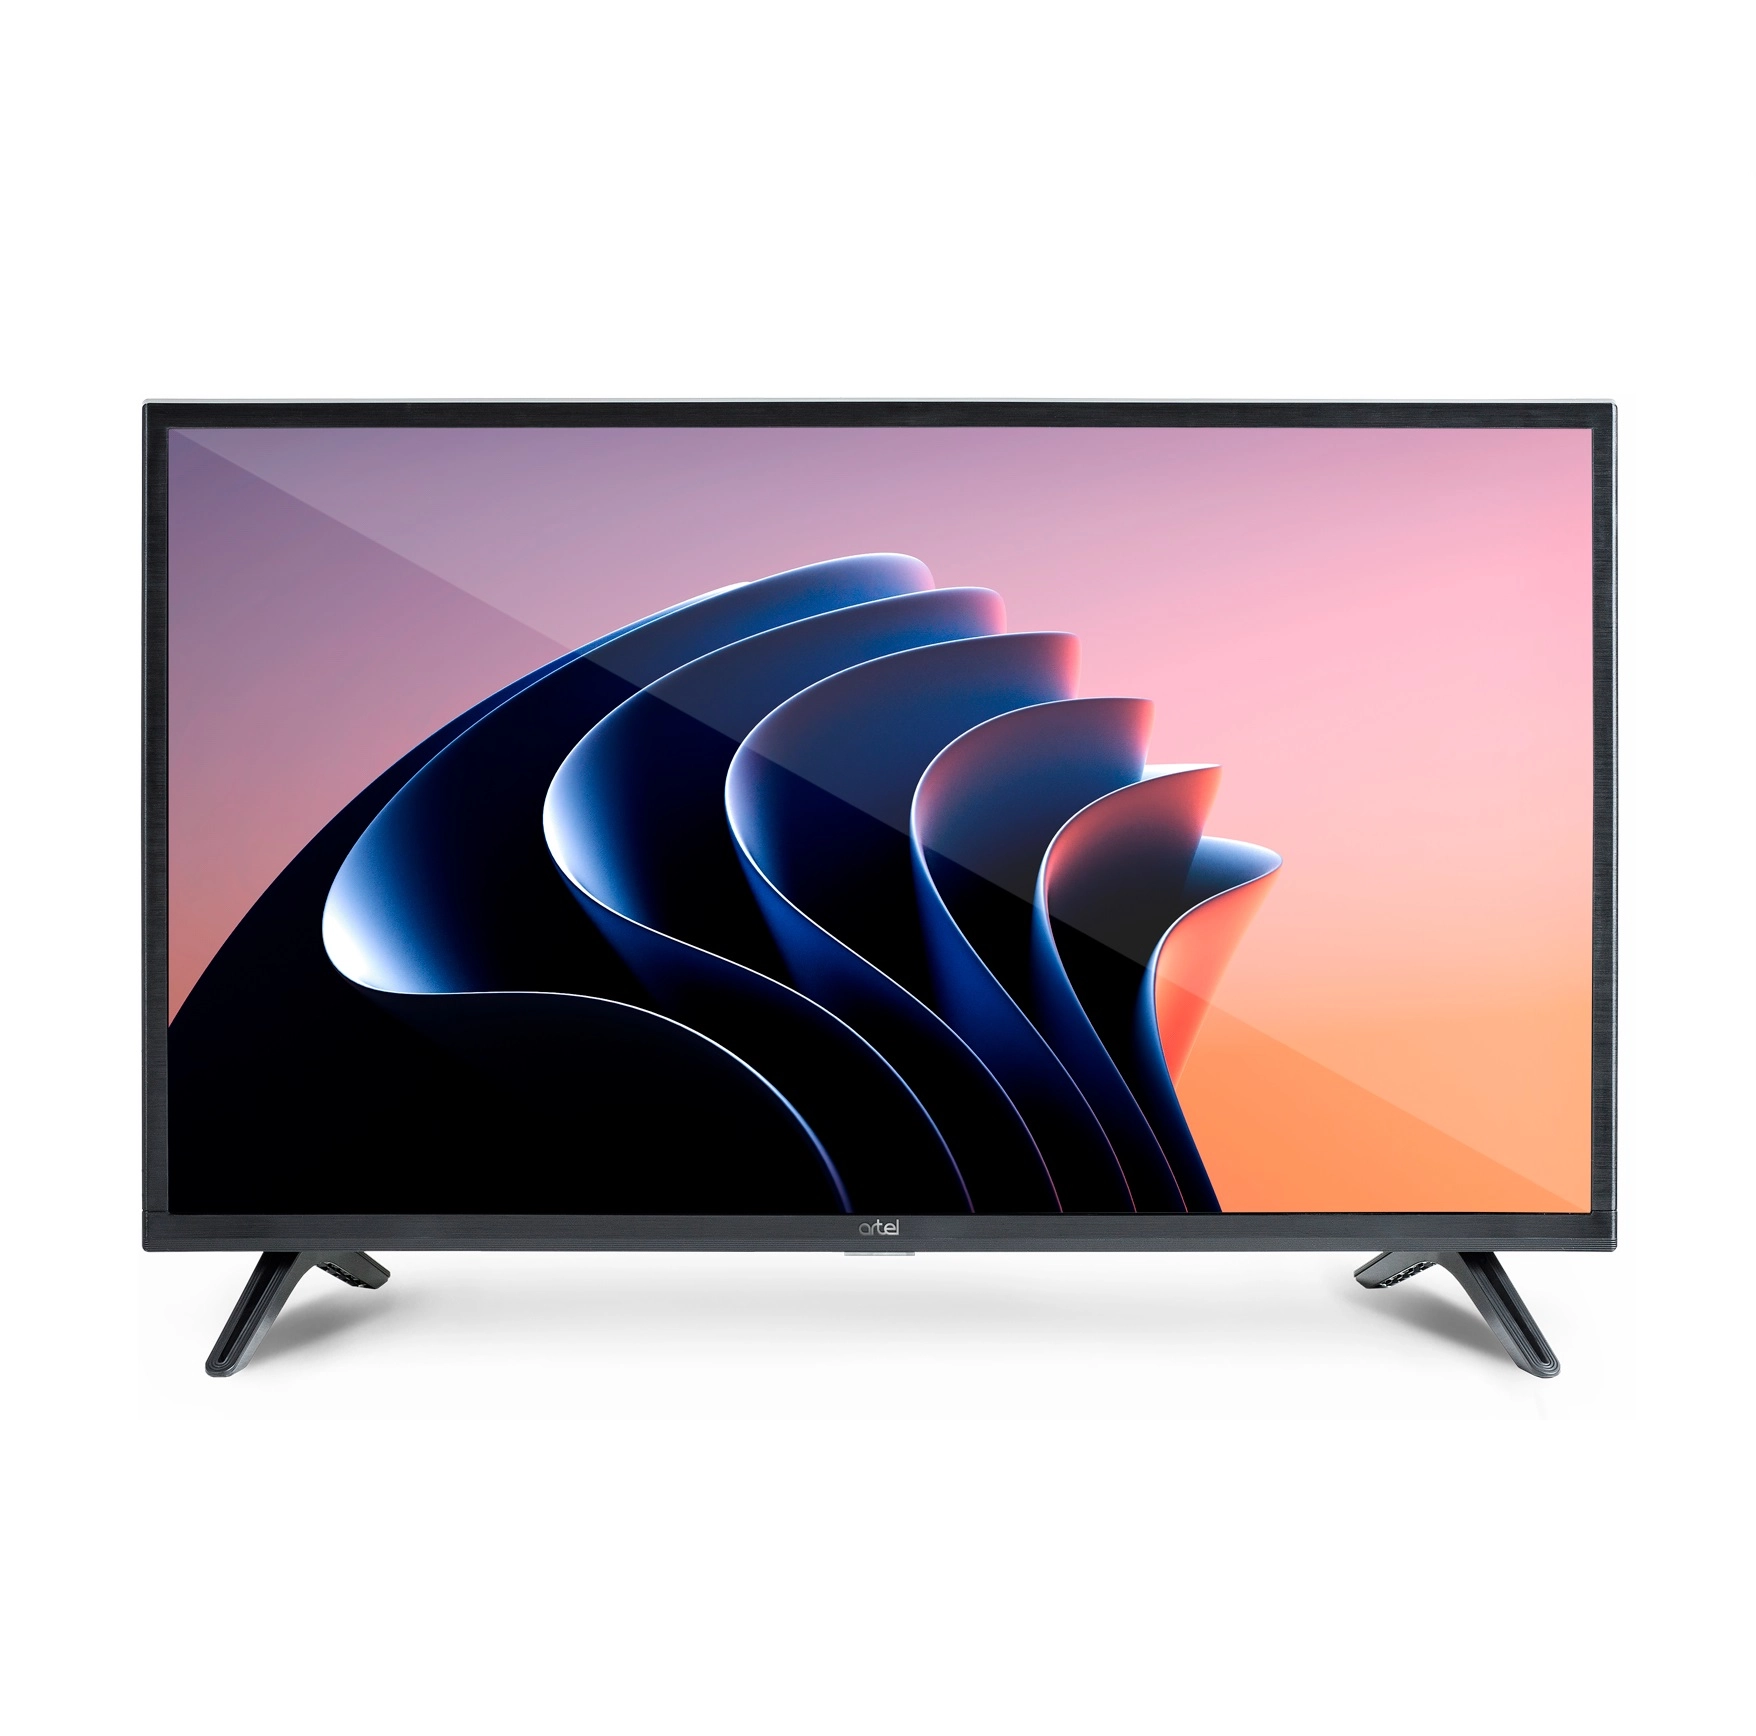 Телевизор Artel 32KH5500 Smart TV купить